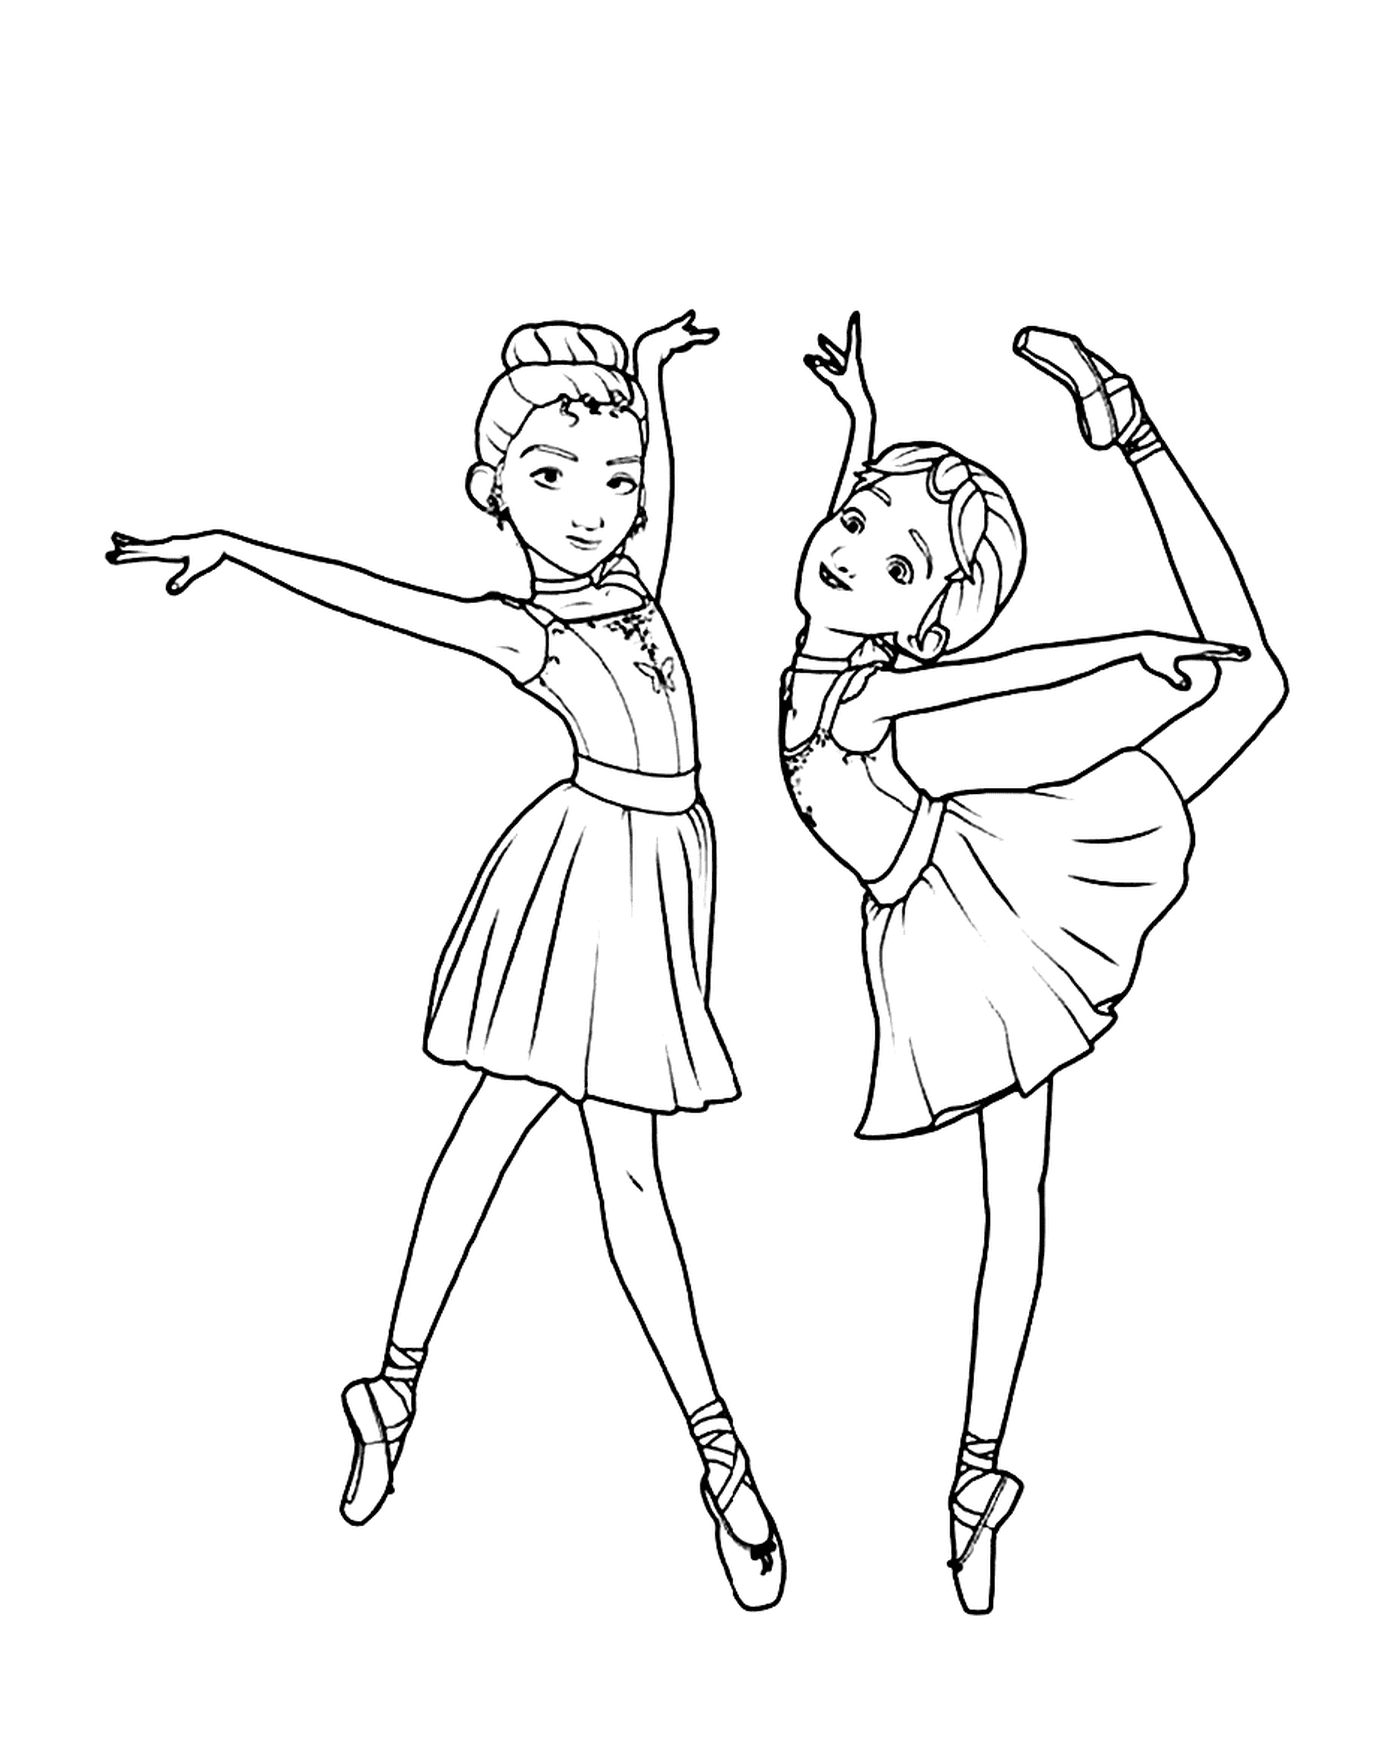   deux jeunes ballerines posent pour une photo 